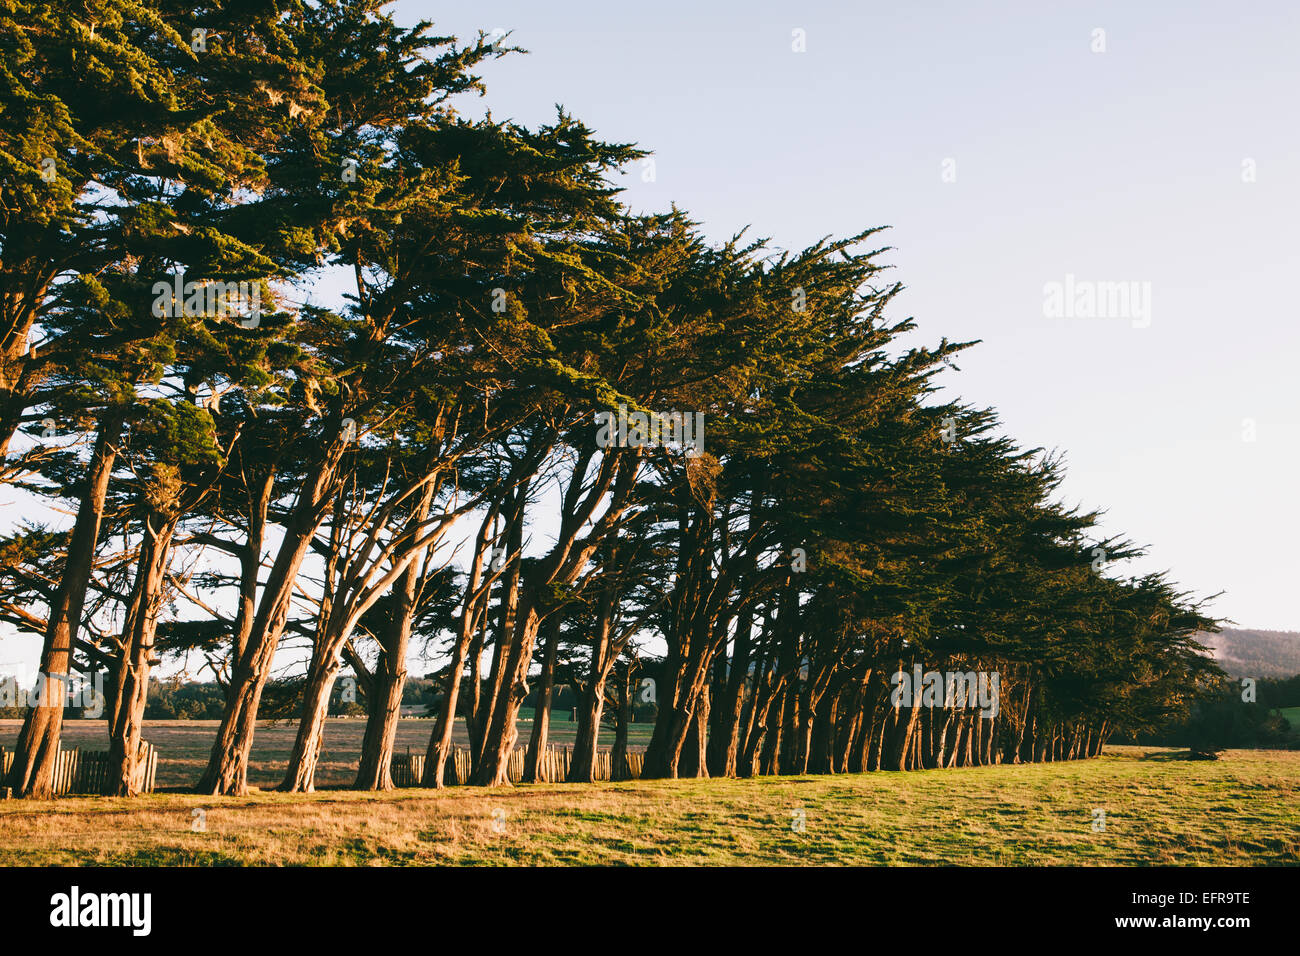 Zeile der Monterey-Zypresse Bäume einheimischen Baumarten am Rande eines Feldes in der Nähe von Point Reyes. Stockfoto